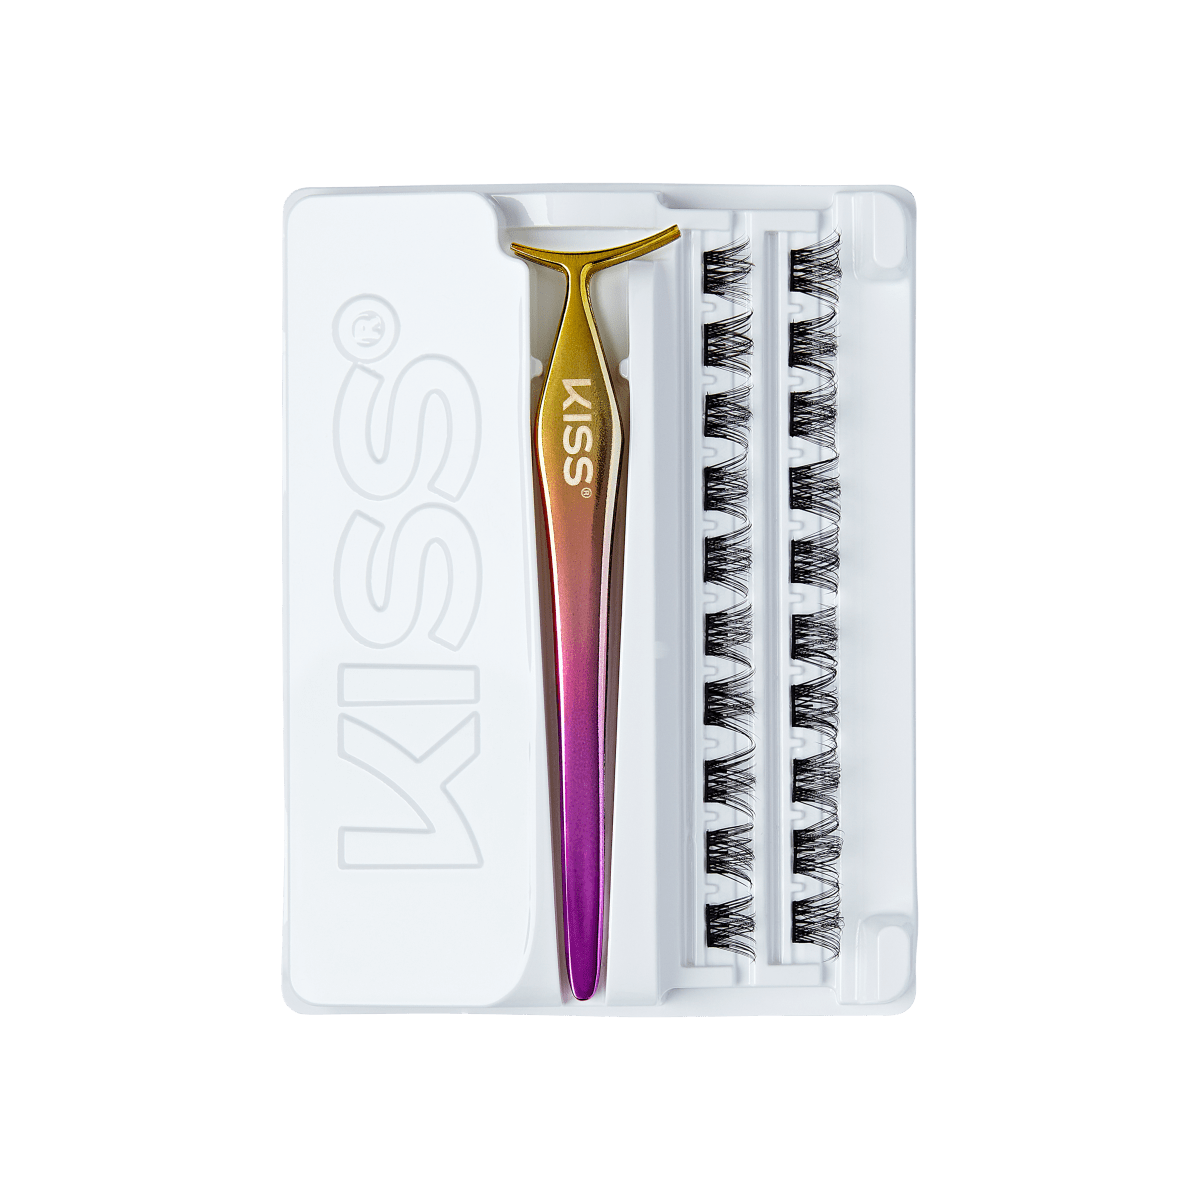 imPRESS Press-On Falsies No-Glue False Eyelash Clusters Precision  Applicator, 1 Piece – KISS USA